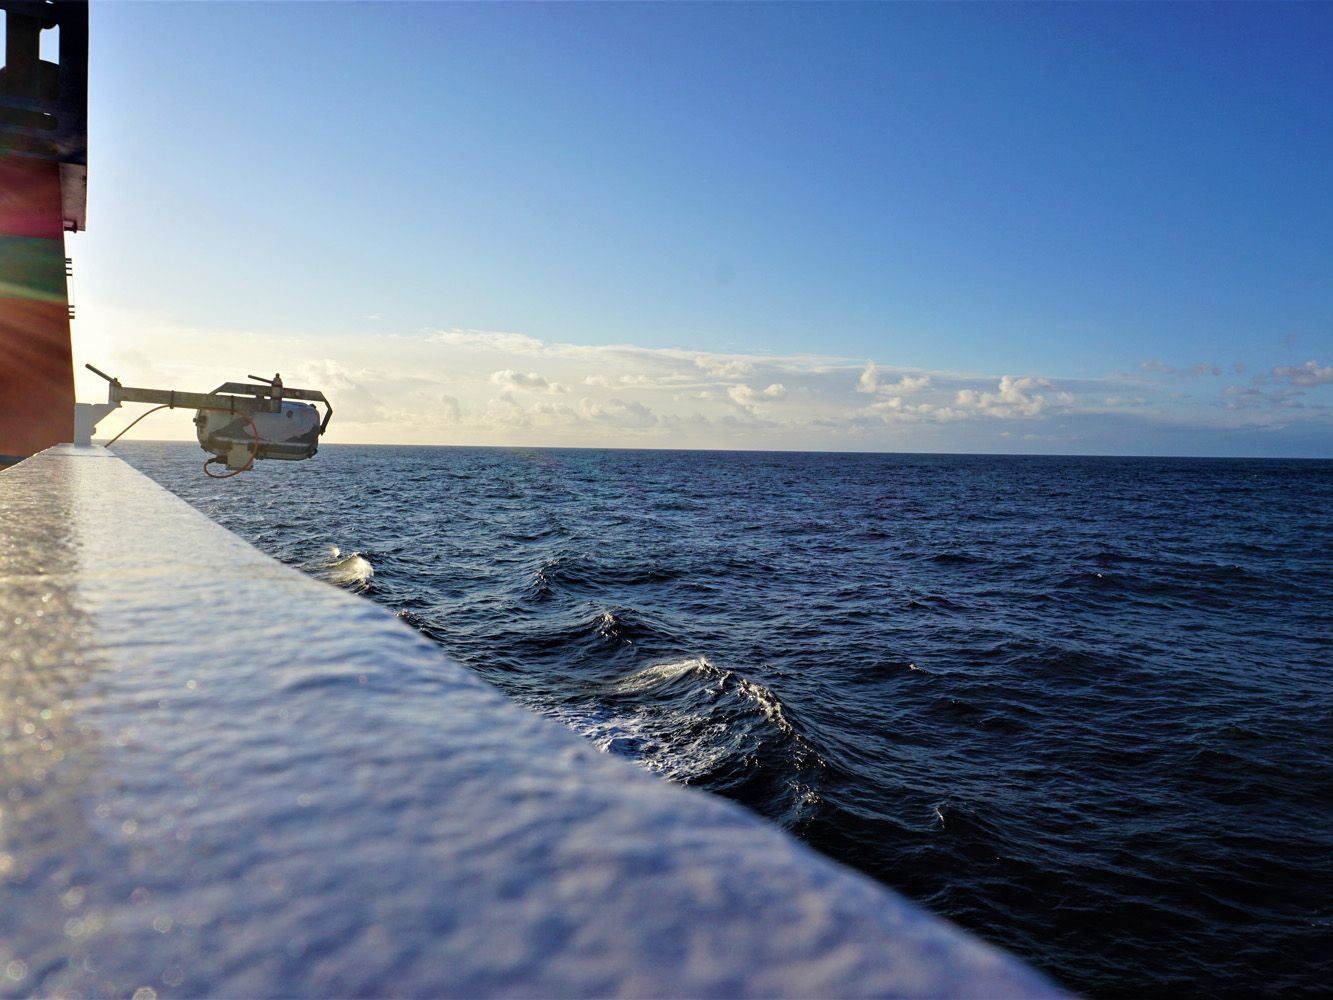 Blick über die Reling der Walter Herwig 3 auf das offene Meer mit leichtem Sonnenschein.